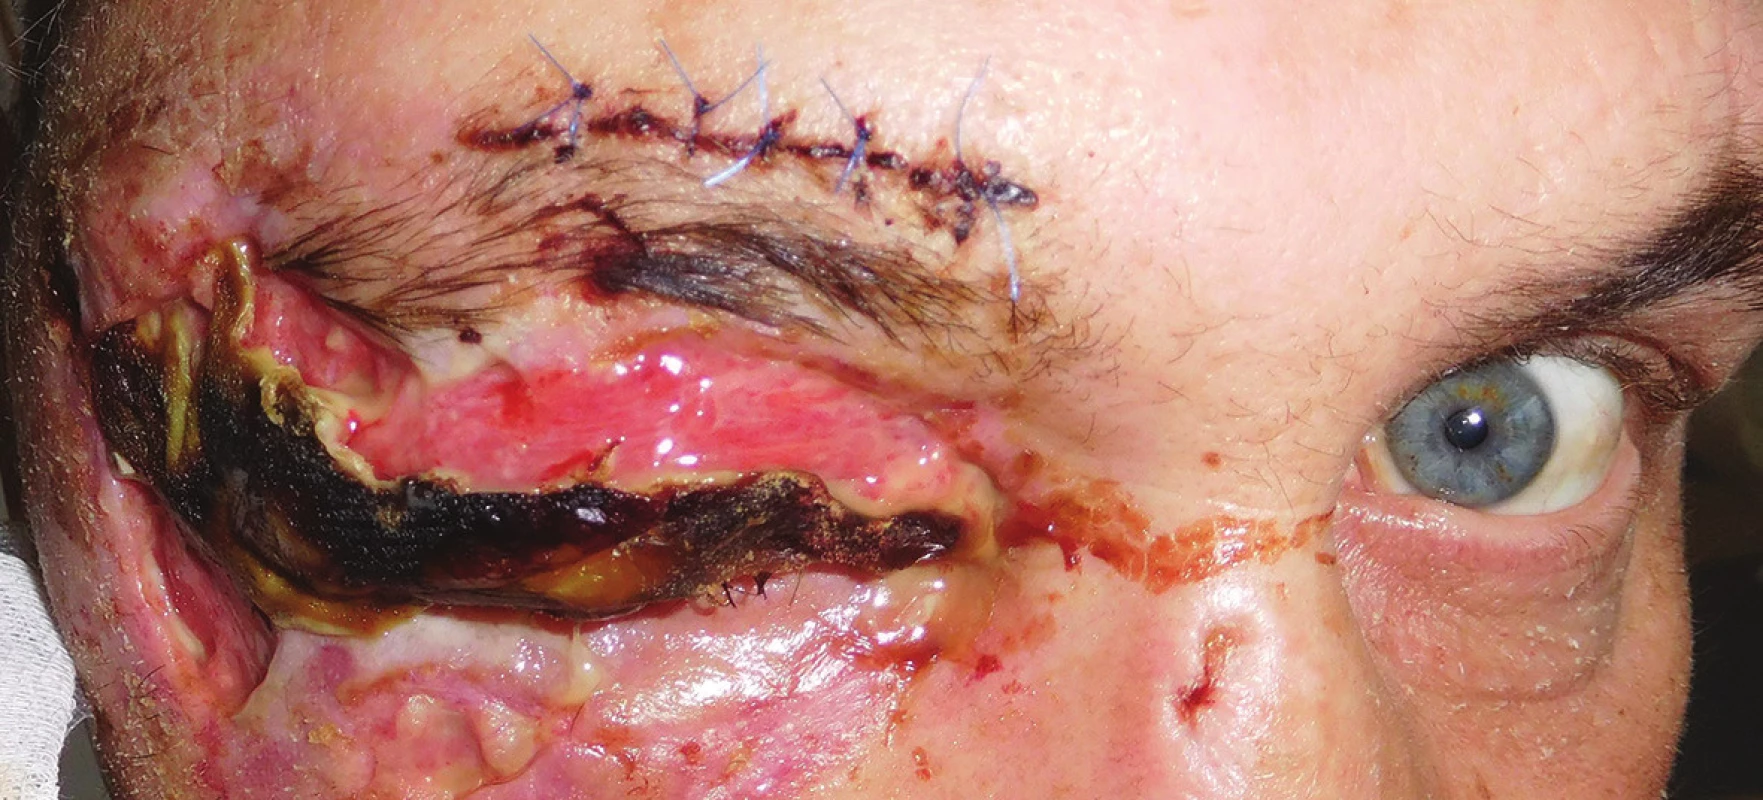 Pacient po úraze hlavy a tváre po primárnom ošetrení a suture v oblasti supercília s rozsiahlym defektom kože v oblasti mihalníc pravého oka